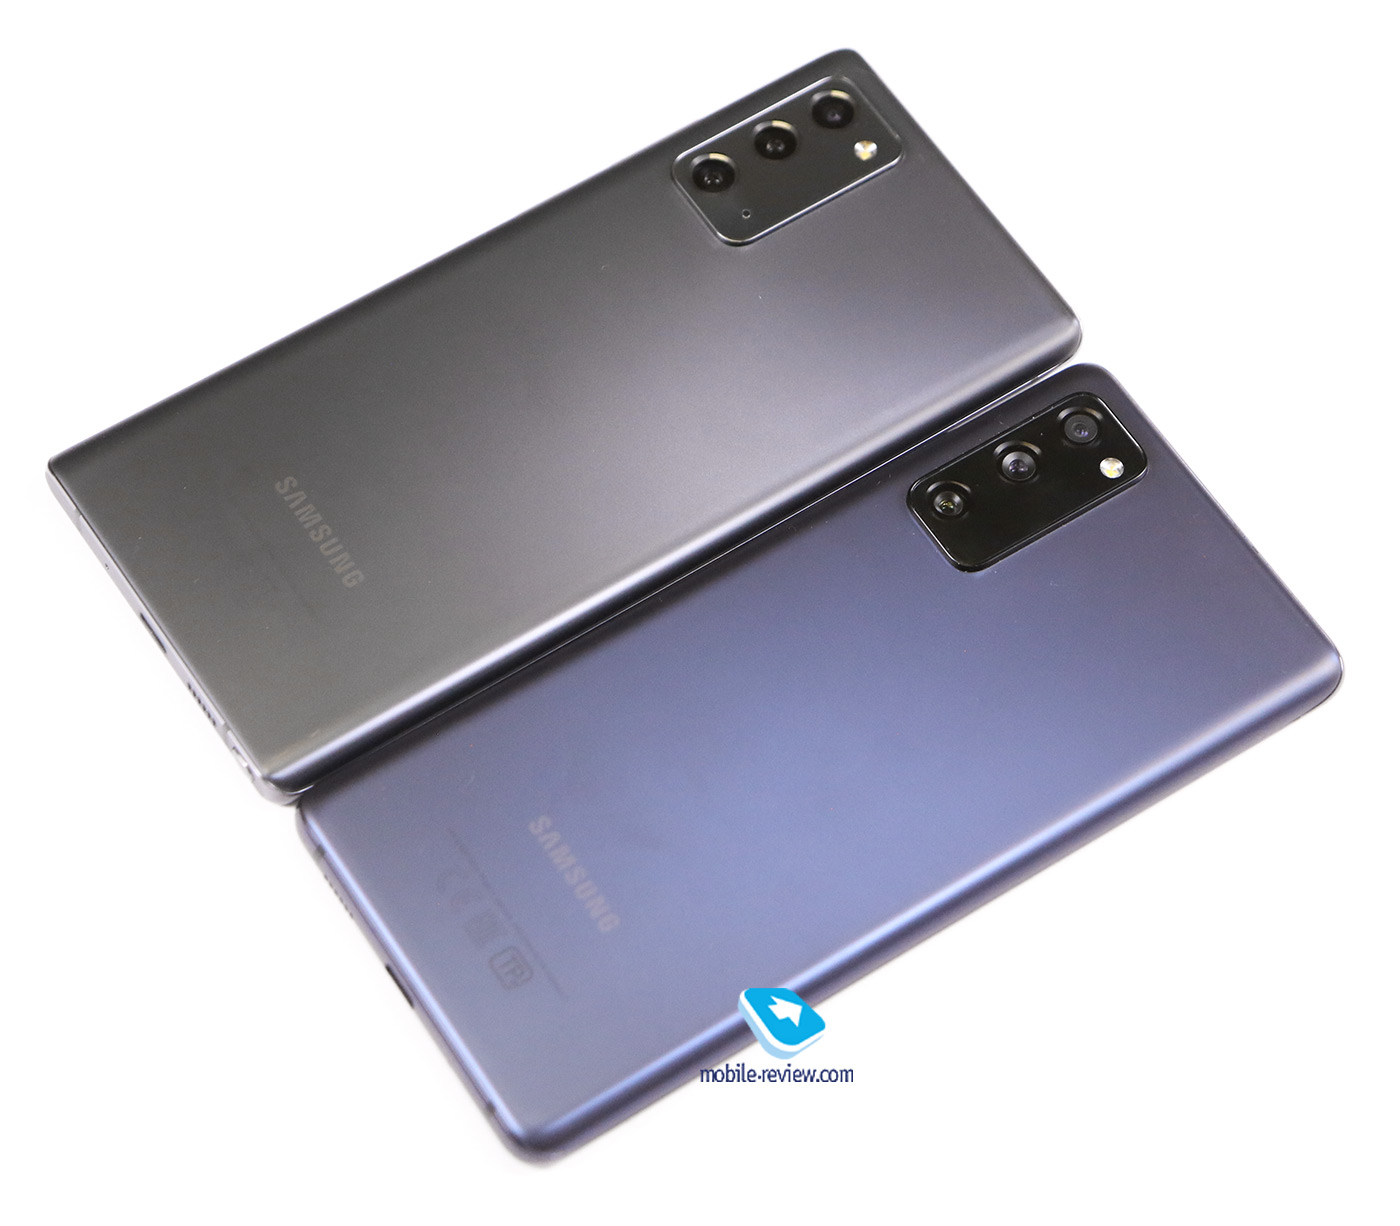    Samsung Galaxy S20 FE (SM-G780F/FZ)